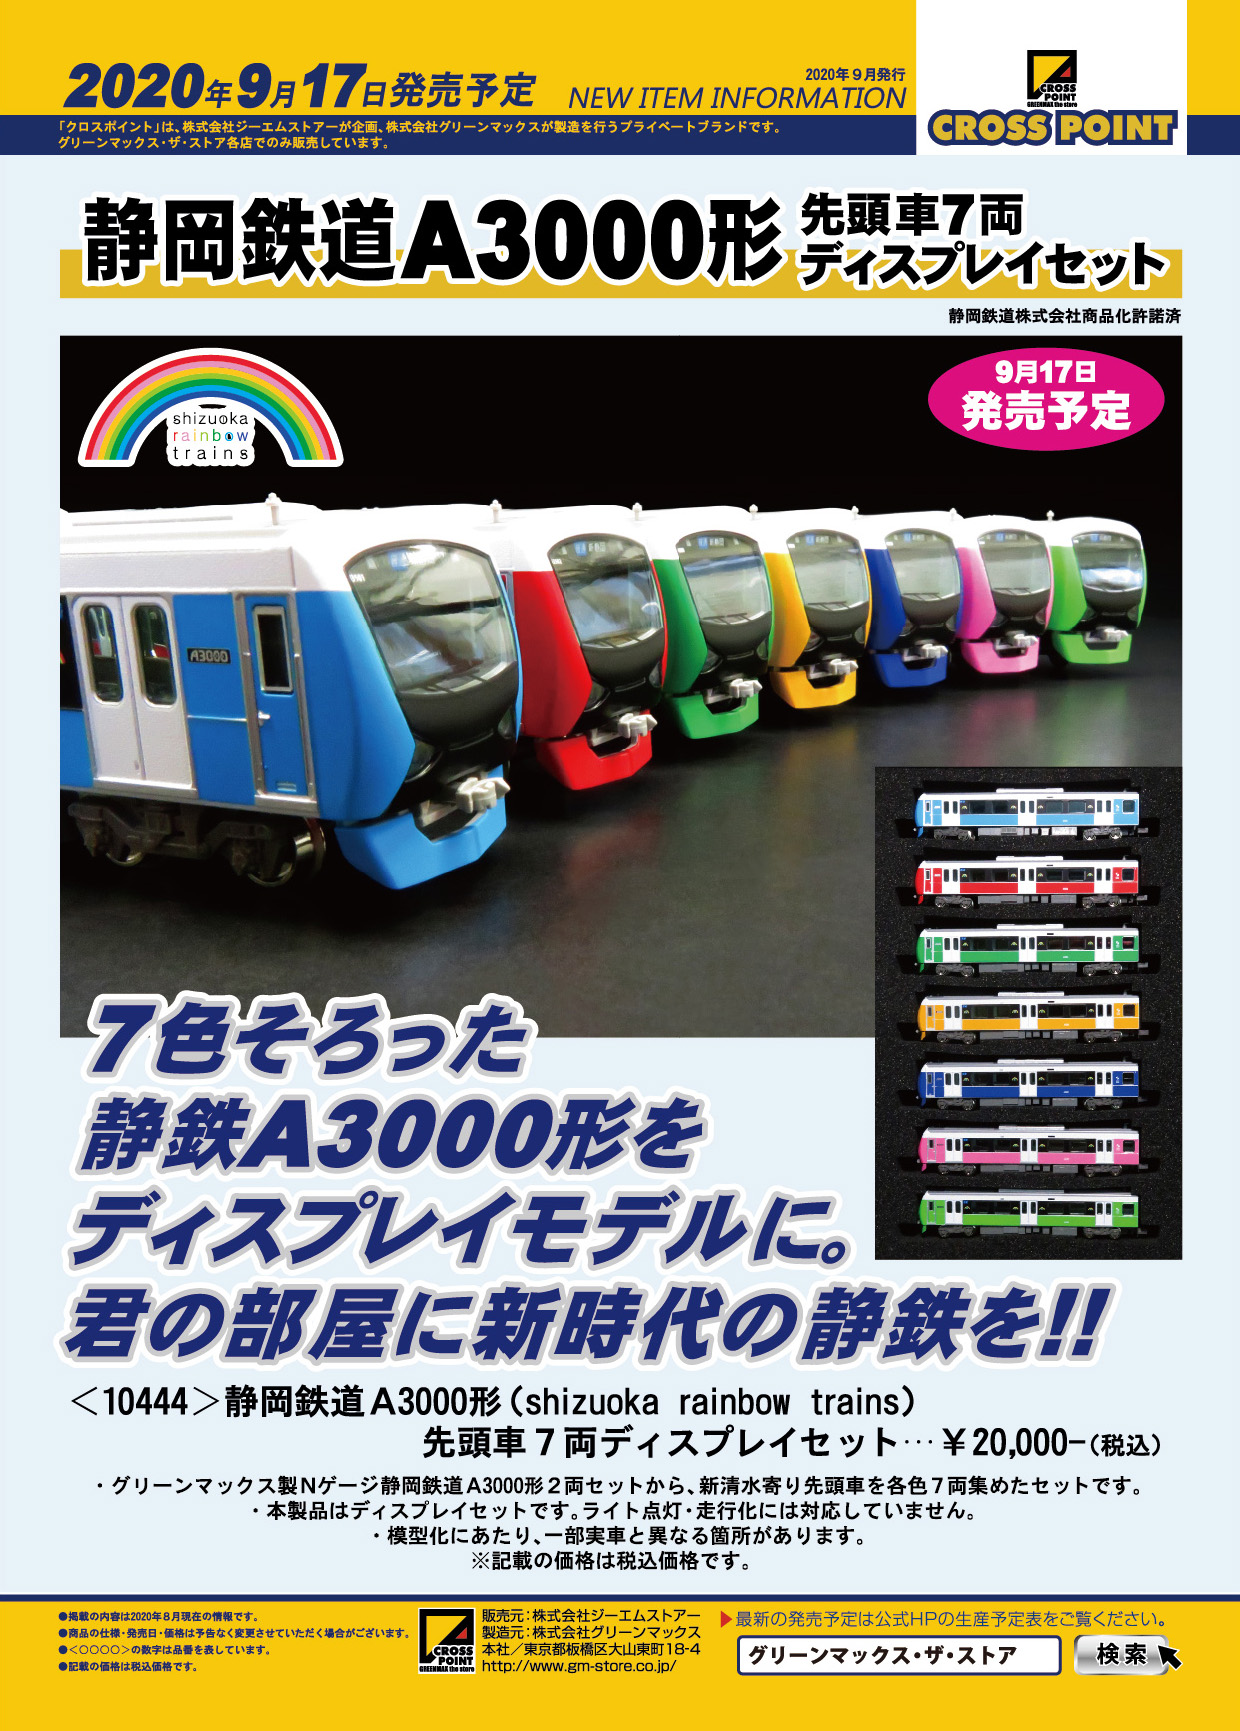 グリーンマックス 静岡鉄道A3000形(パッションレッド、クリアブルー